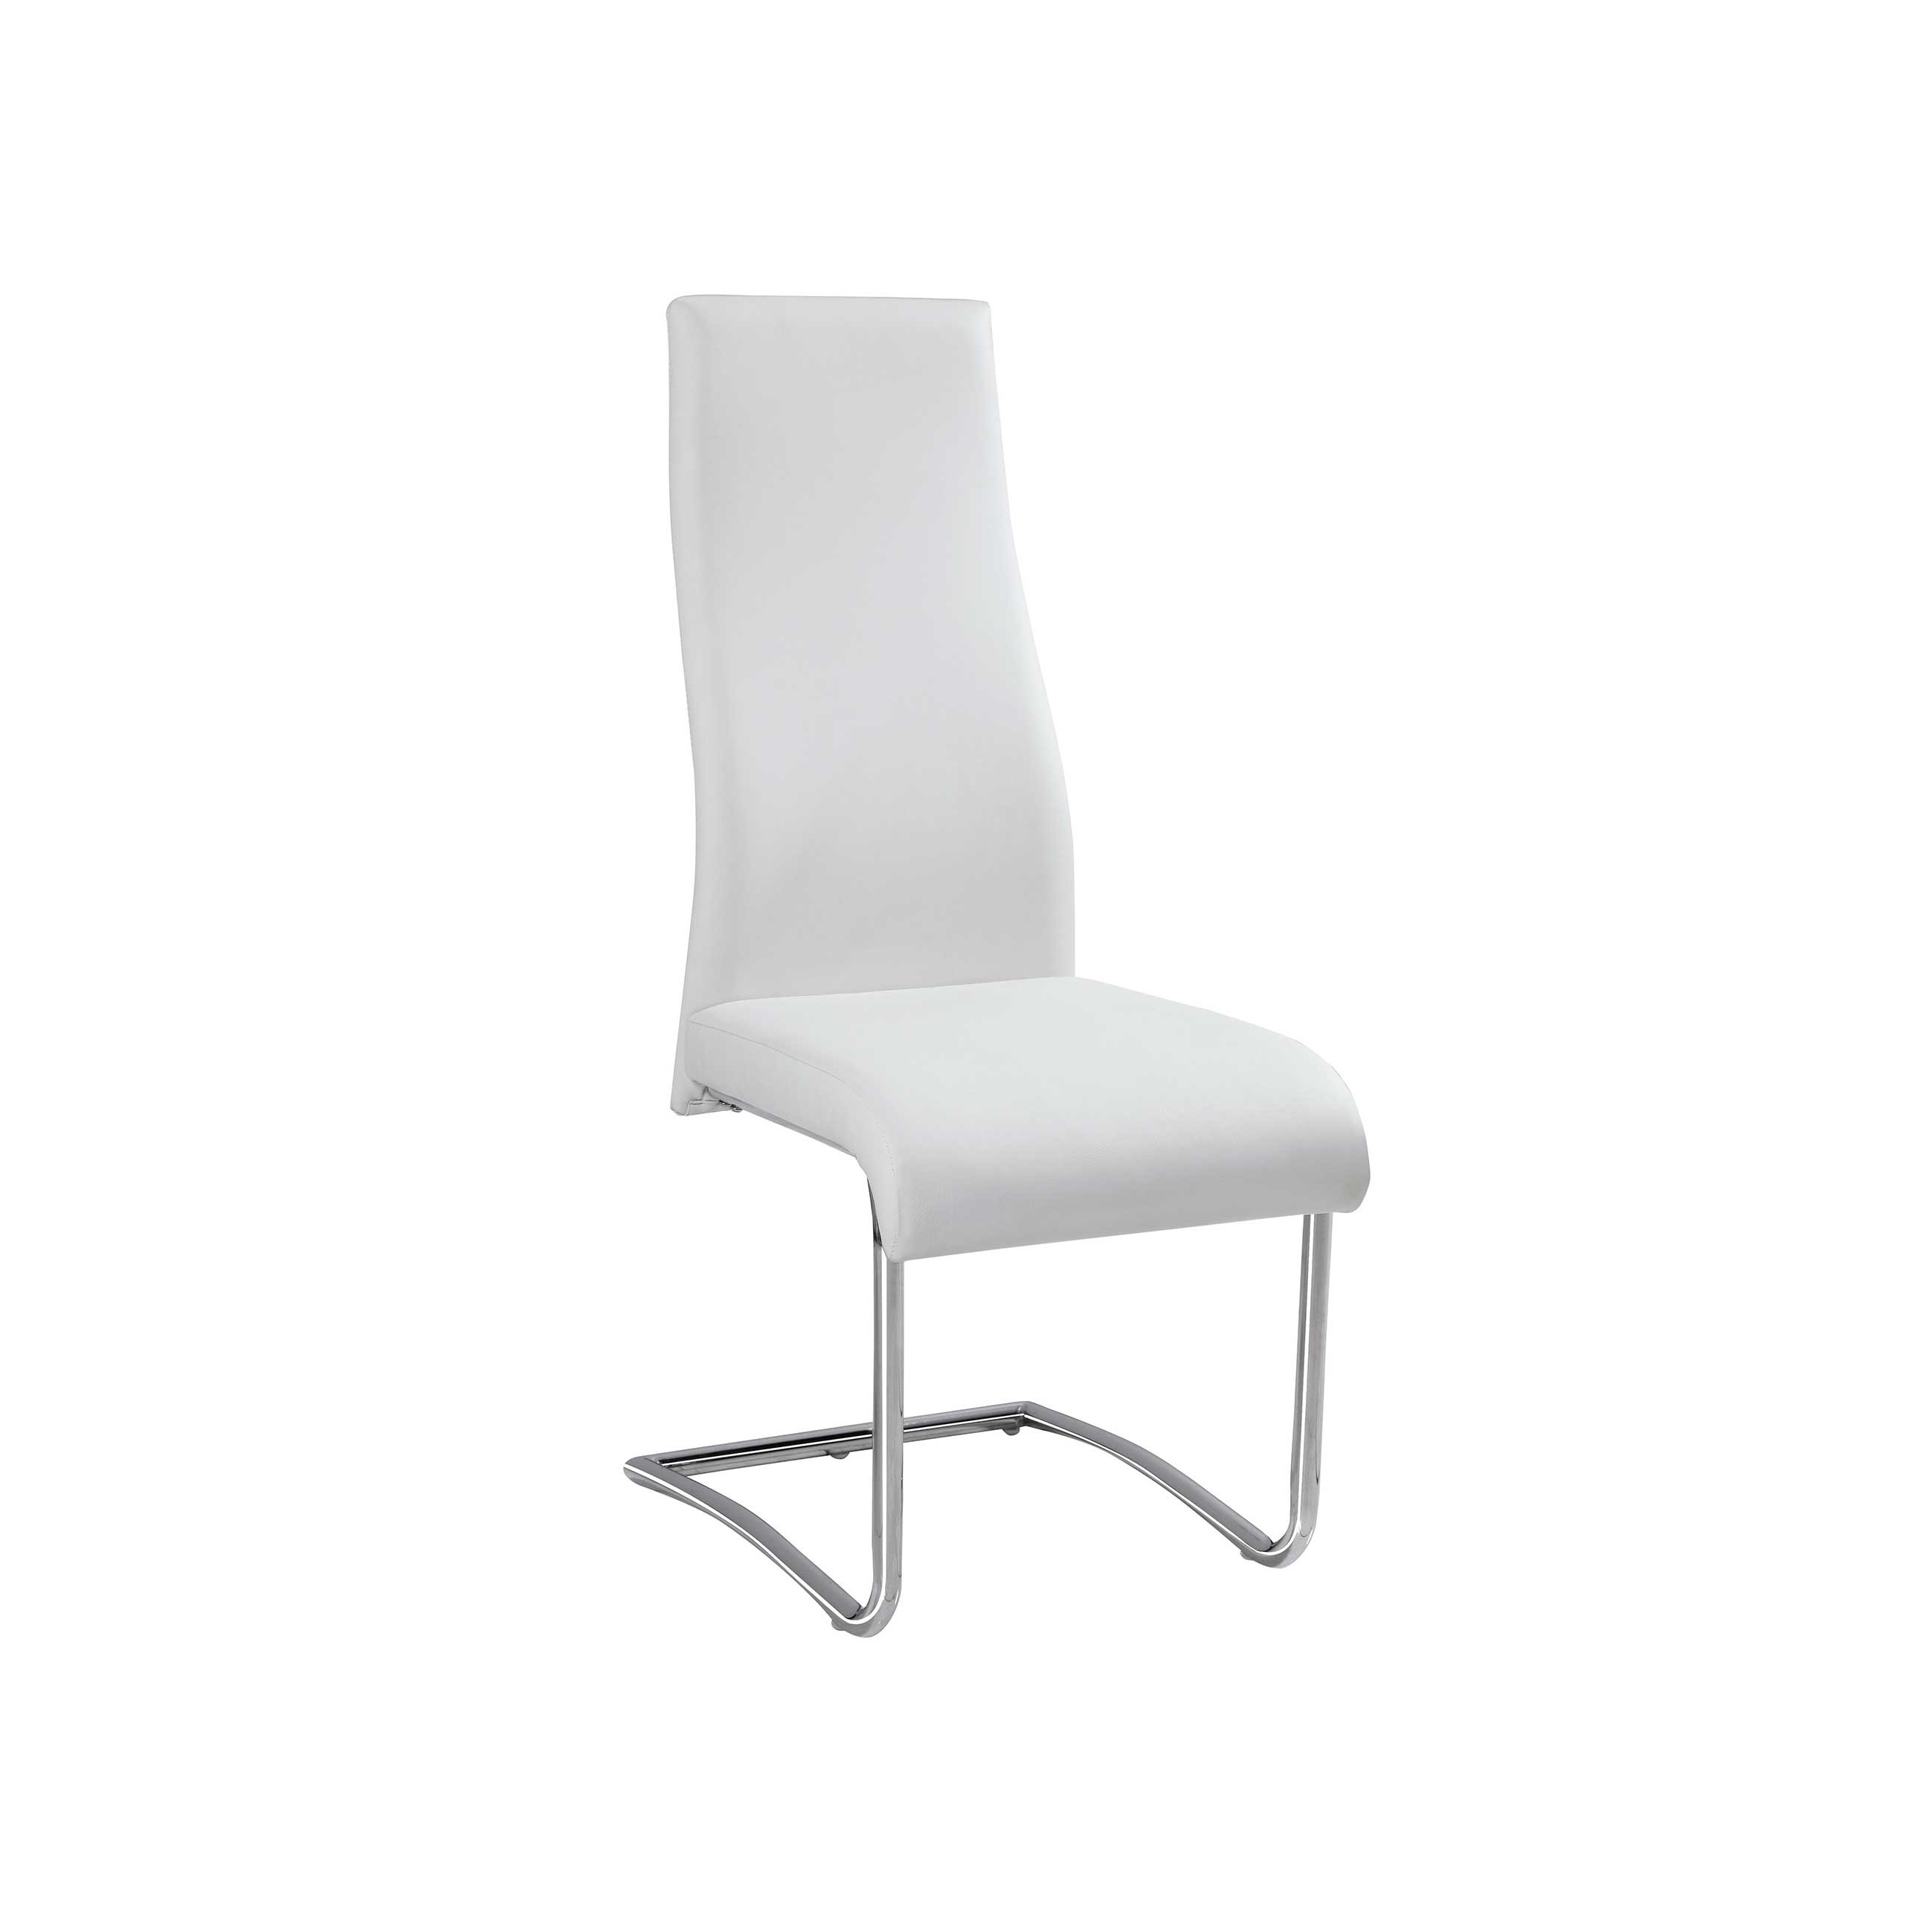 Pack 4 sillas polipiel color blanco 